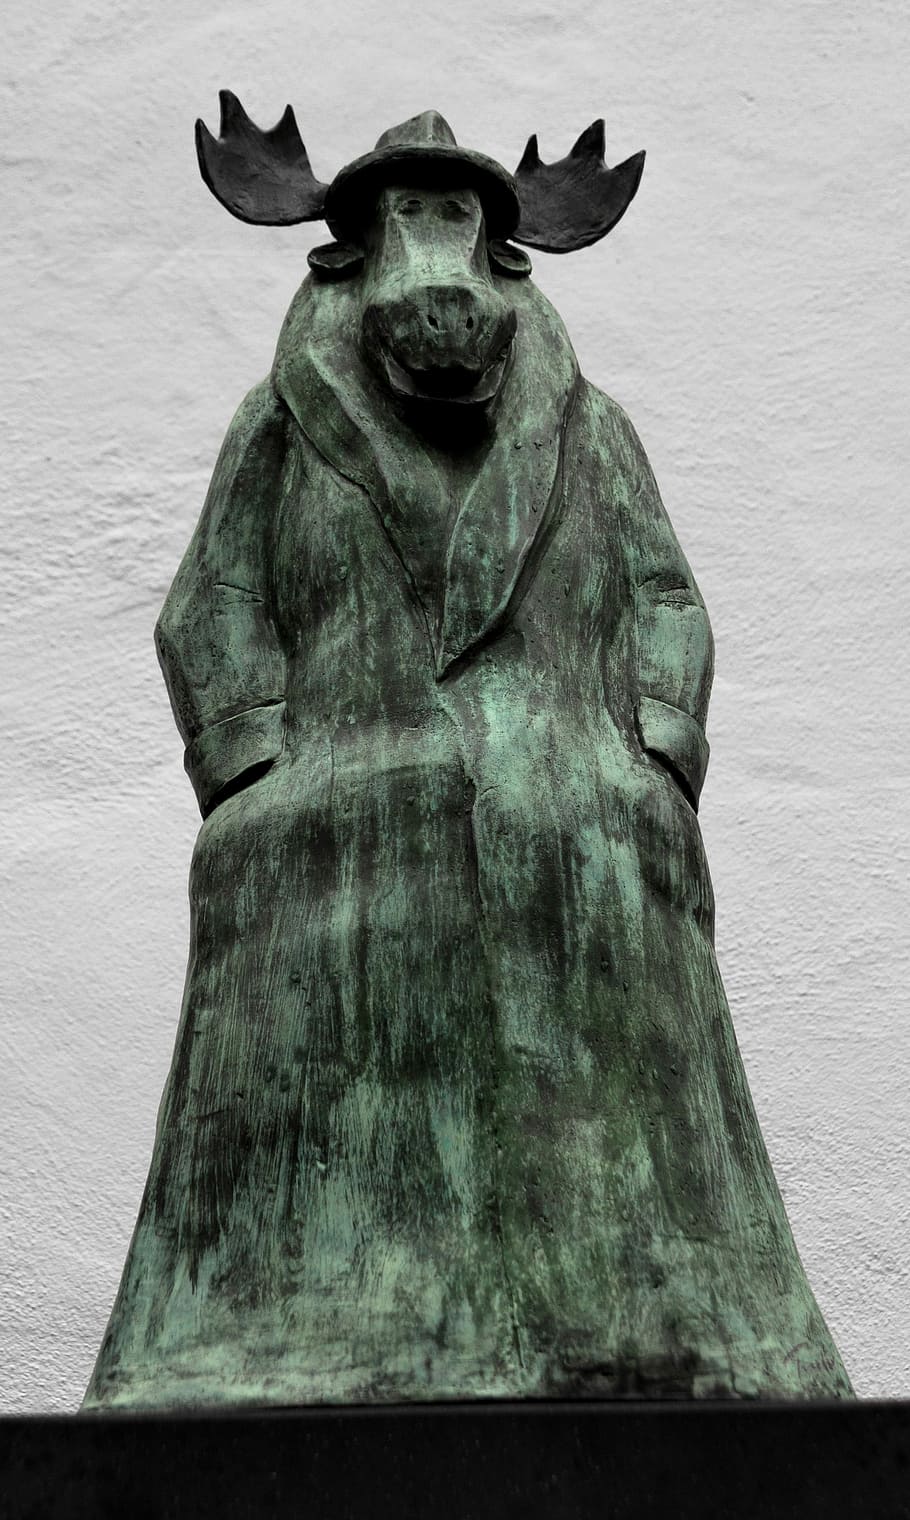 Elk, Statue, Caricature, Sculpture, bronze, trenchcoat, hat, hans traxler, frankfurt, museum